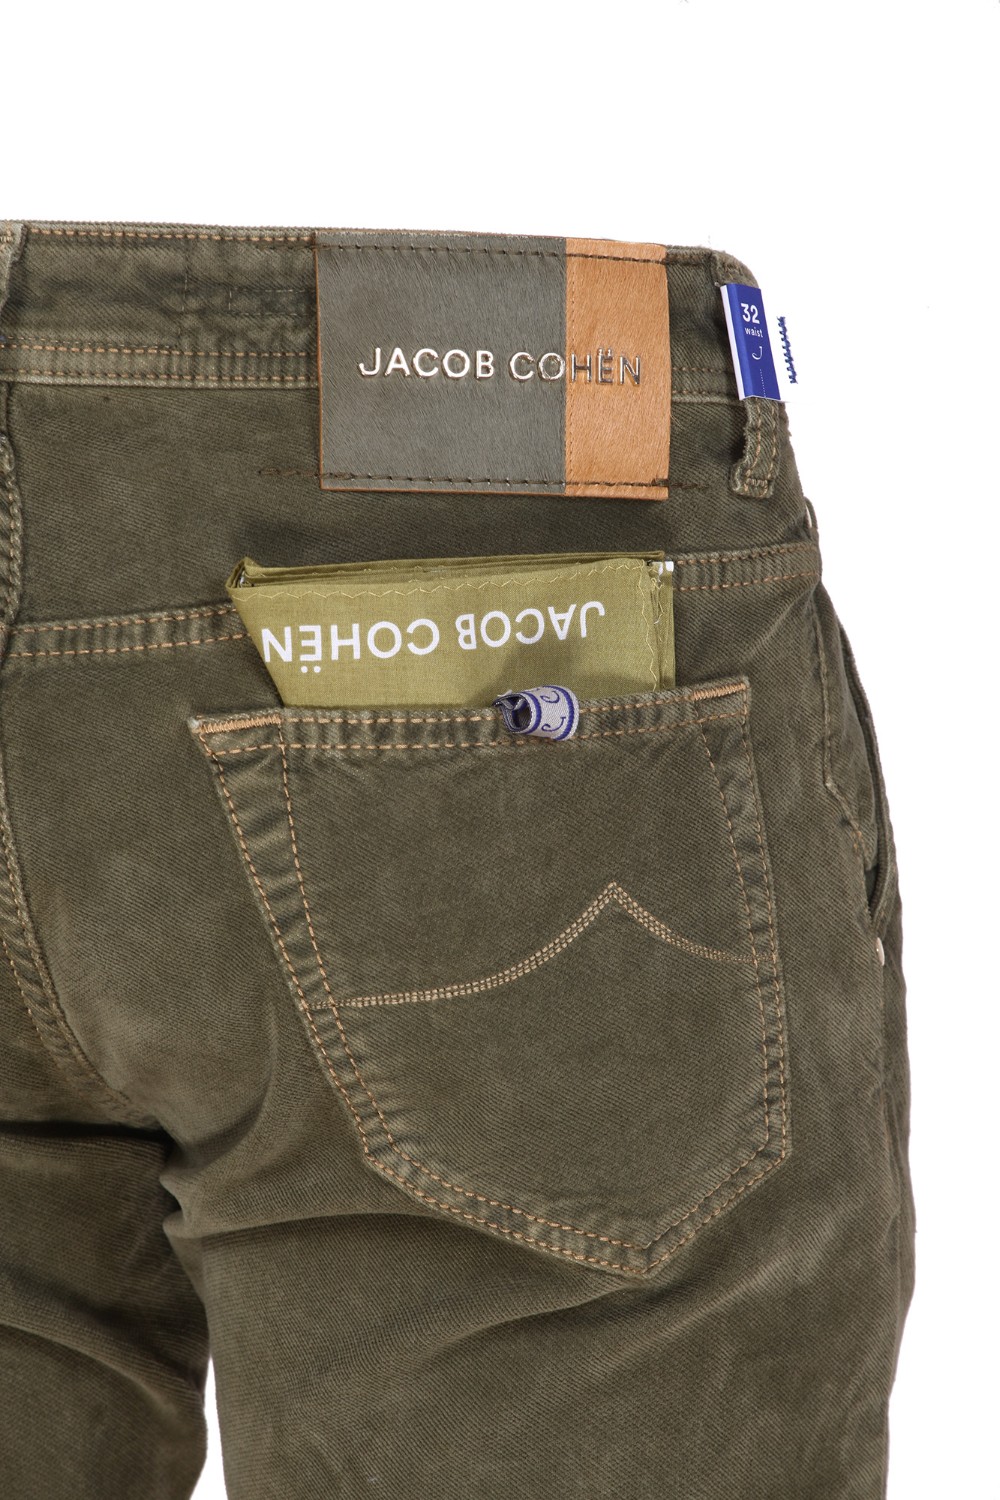 shop JACOB COHEN Saldi Jeans: Jacob Cohen jeans elasticizzato, modello Leonard.
Tasche all' americana.
Tasche posteriori con ricamo e fazzoletto.
Chiusura con bottoni.
Patch in cavallino.
Composizione: 98% Cotone 2% Elastan.
Fabbricato in Italia.. LEONARD S3642-R42 number 4163390